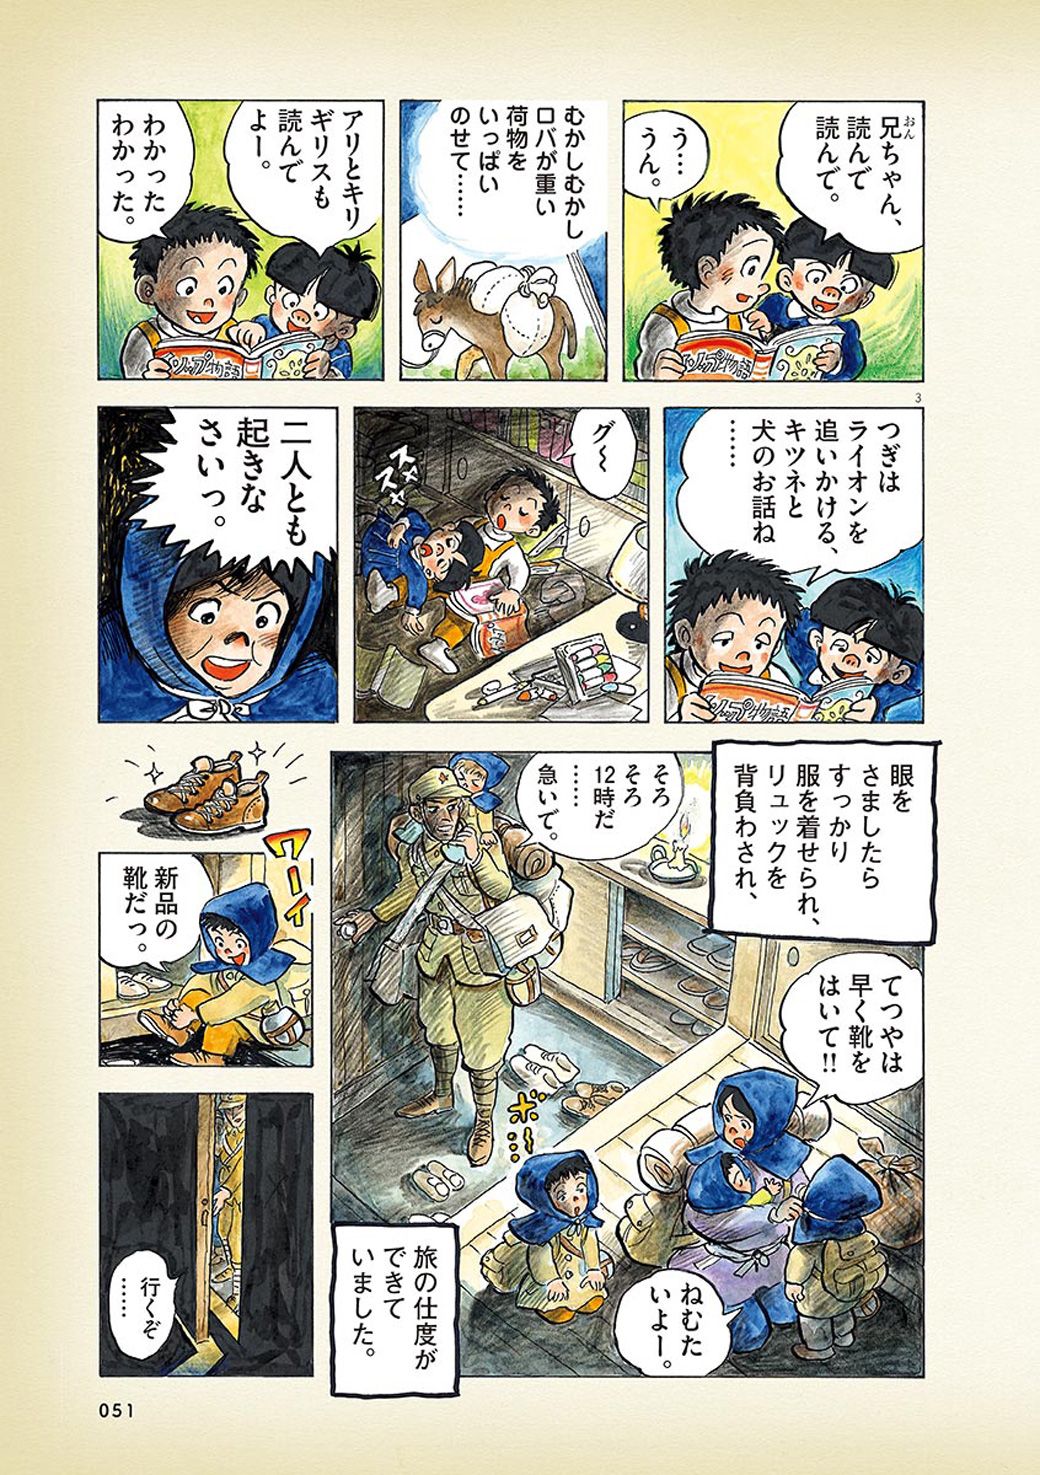 終戦を満州で迎えた日本人家族が脱出した瞬間 漫画 ひねもすのたり日記 第12回 東洋経済オンライン C ちばてつや 小学館 漫画 ひねもす の ｄメニューニュース Nttドコモ